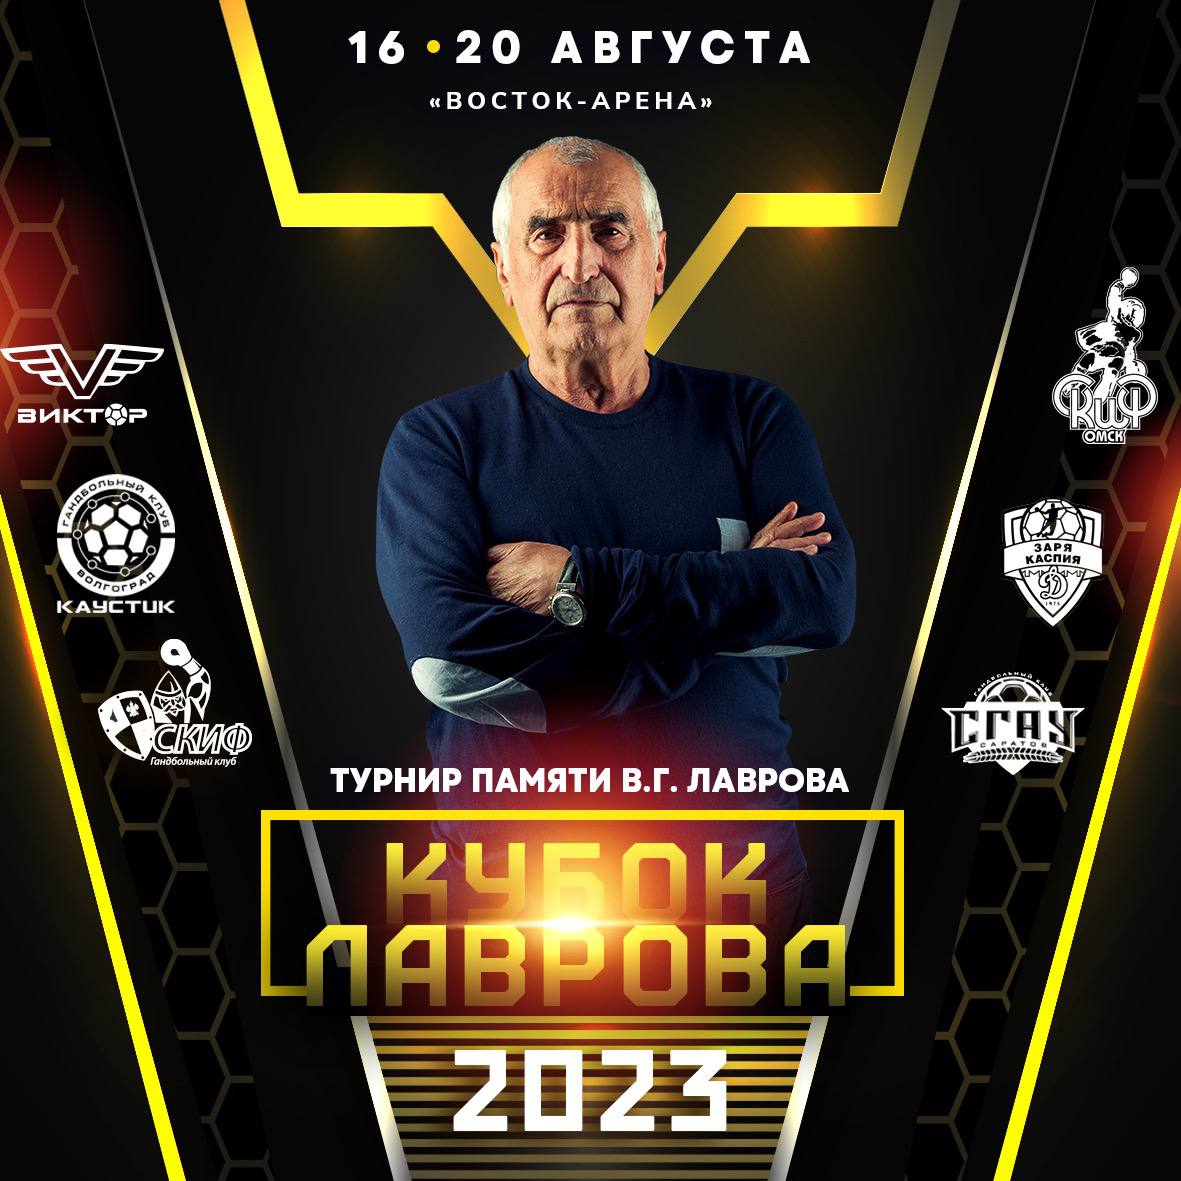 ГК «СГАУ-Саратов» примет участие в Кубке Лаврова